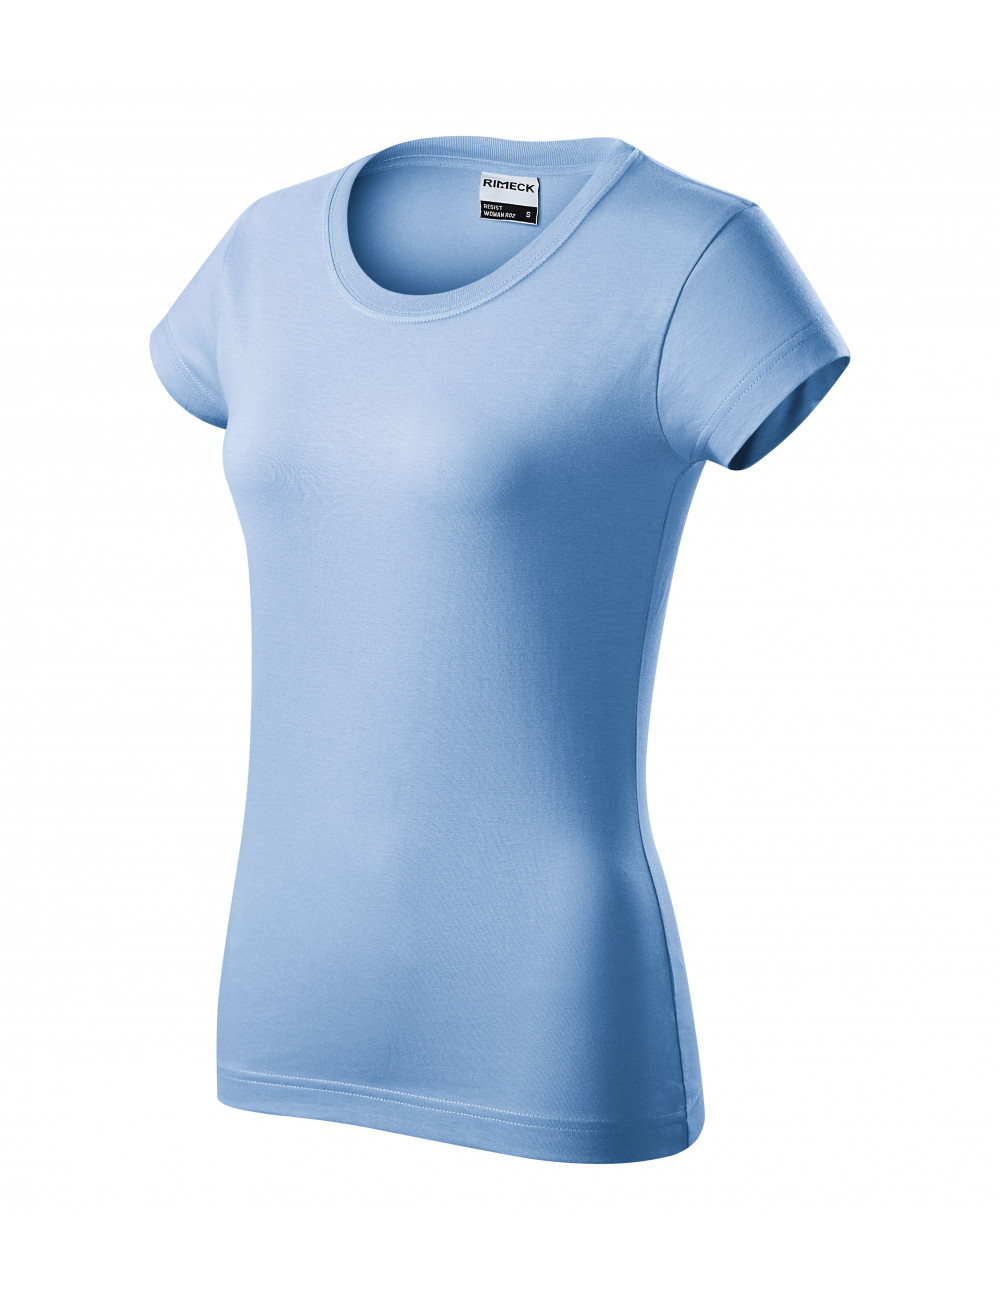 Damen T-Shirt Resist R02 Blau Adler Rimeck